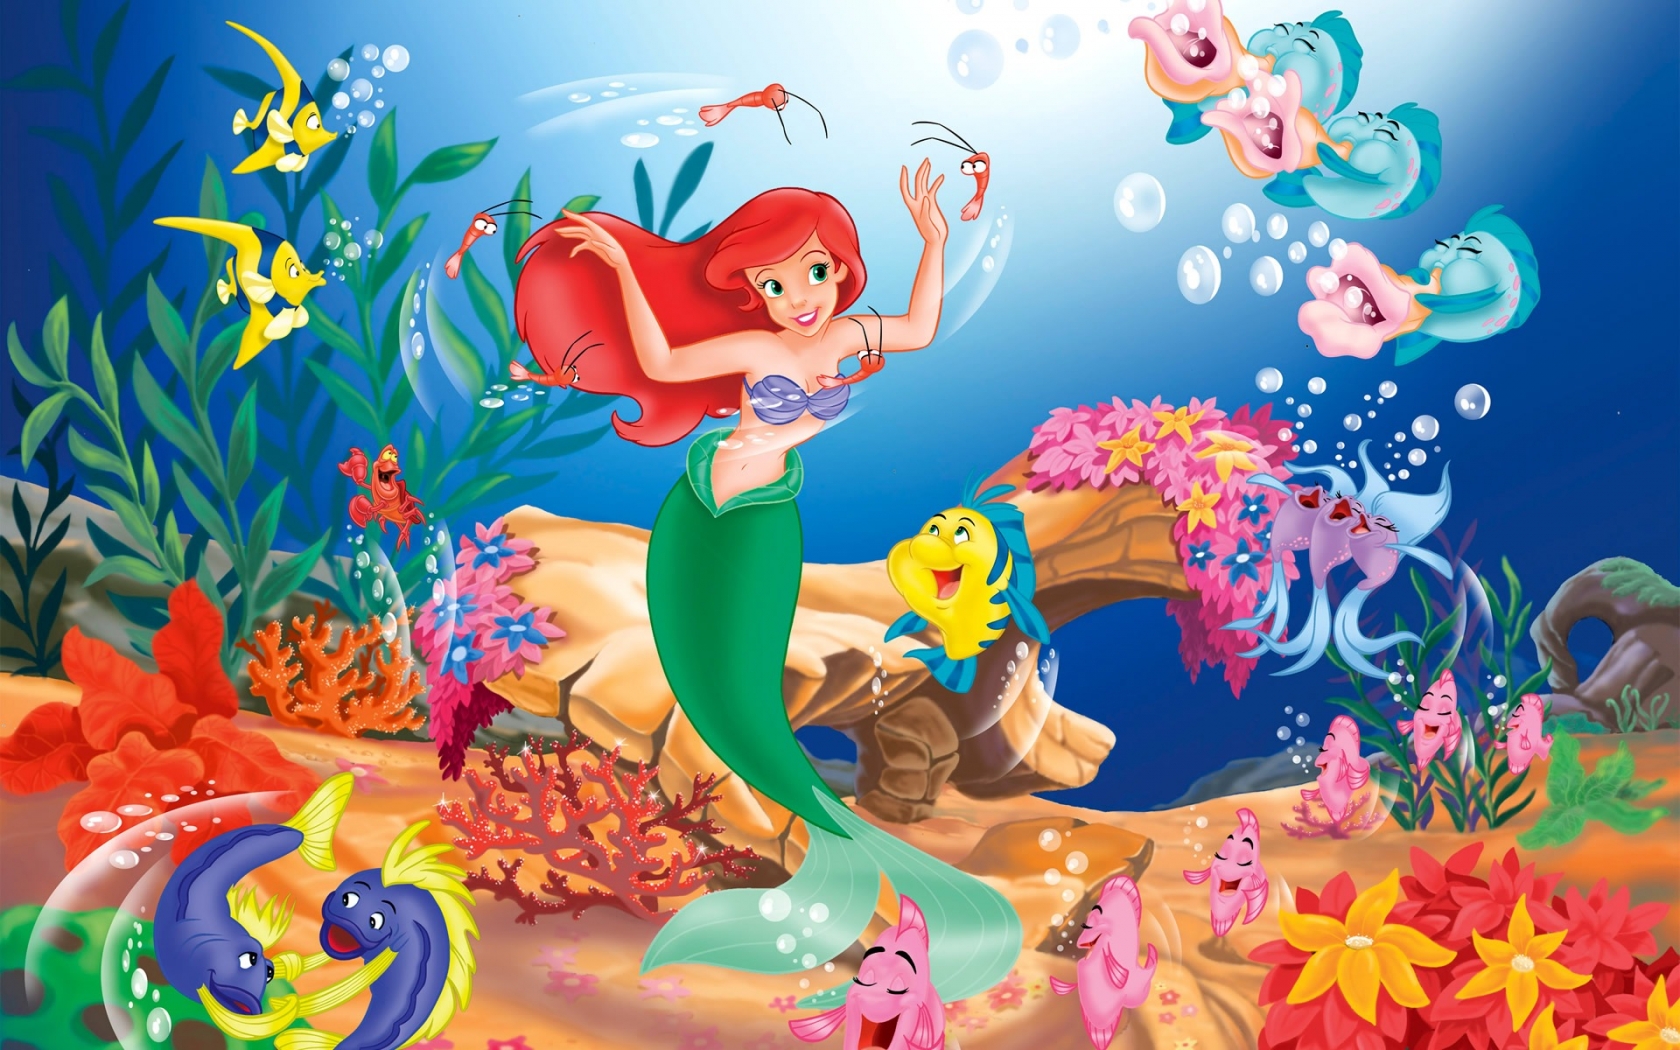 Little Mermaid Cartoon for 1680 x 1050 widescreen resolution